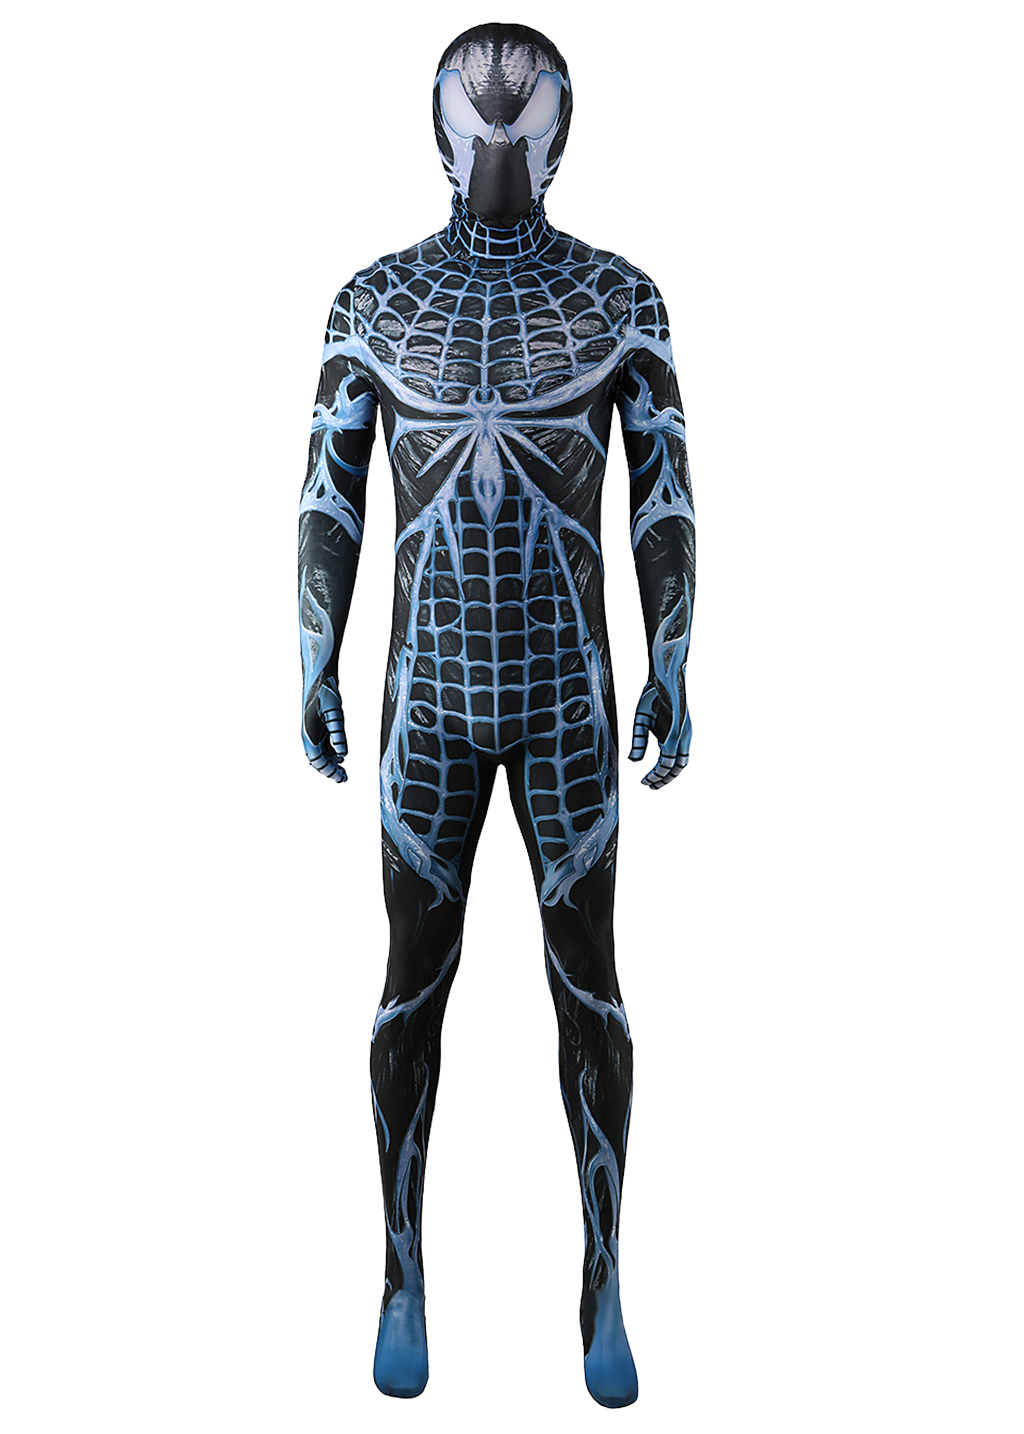 Venom Costume Marvel's Spider-man 2 Bodysuit Cosplay for Adult Kids Black Blue Ver